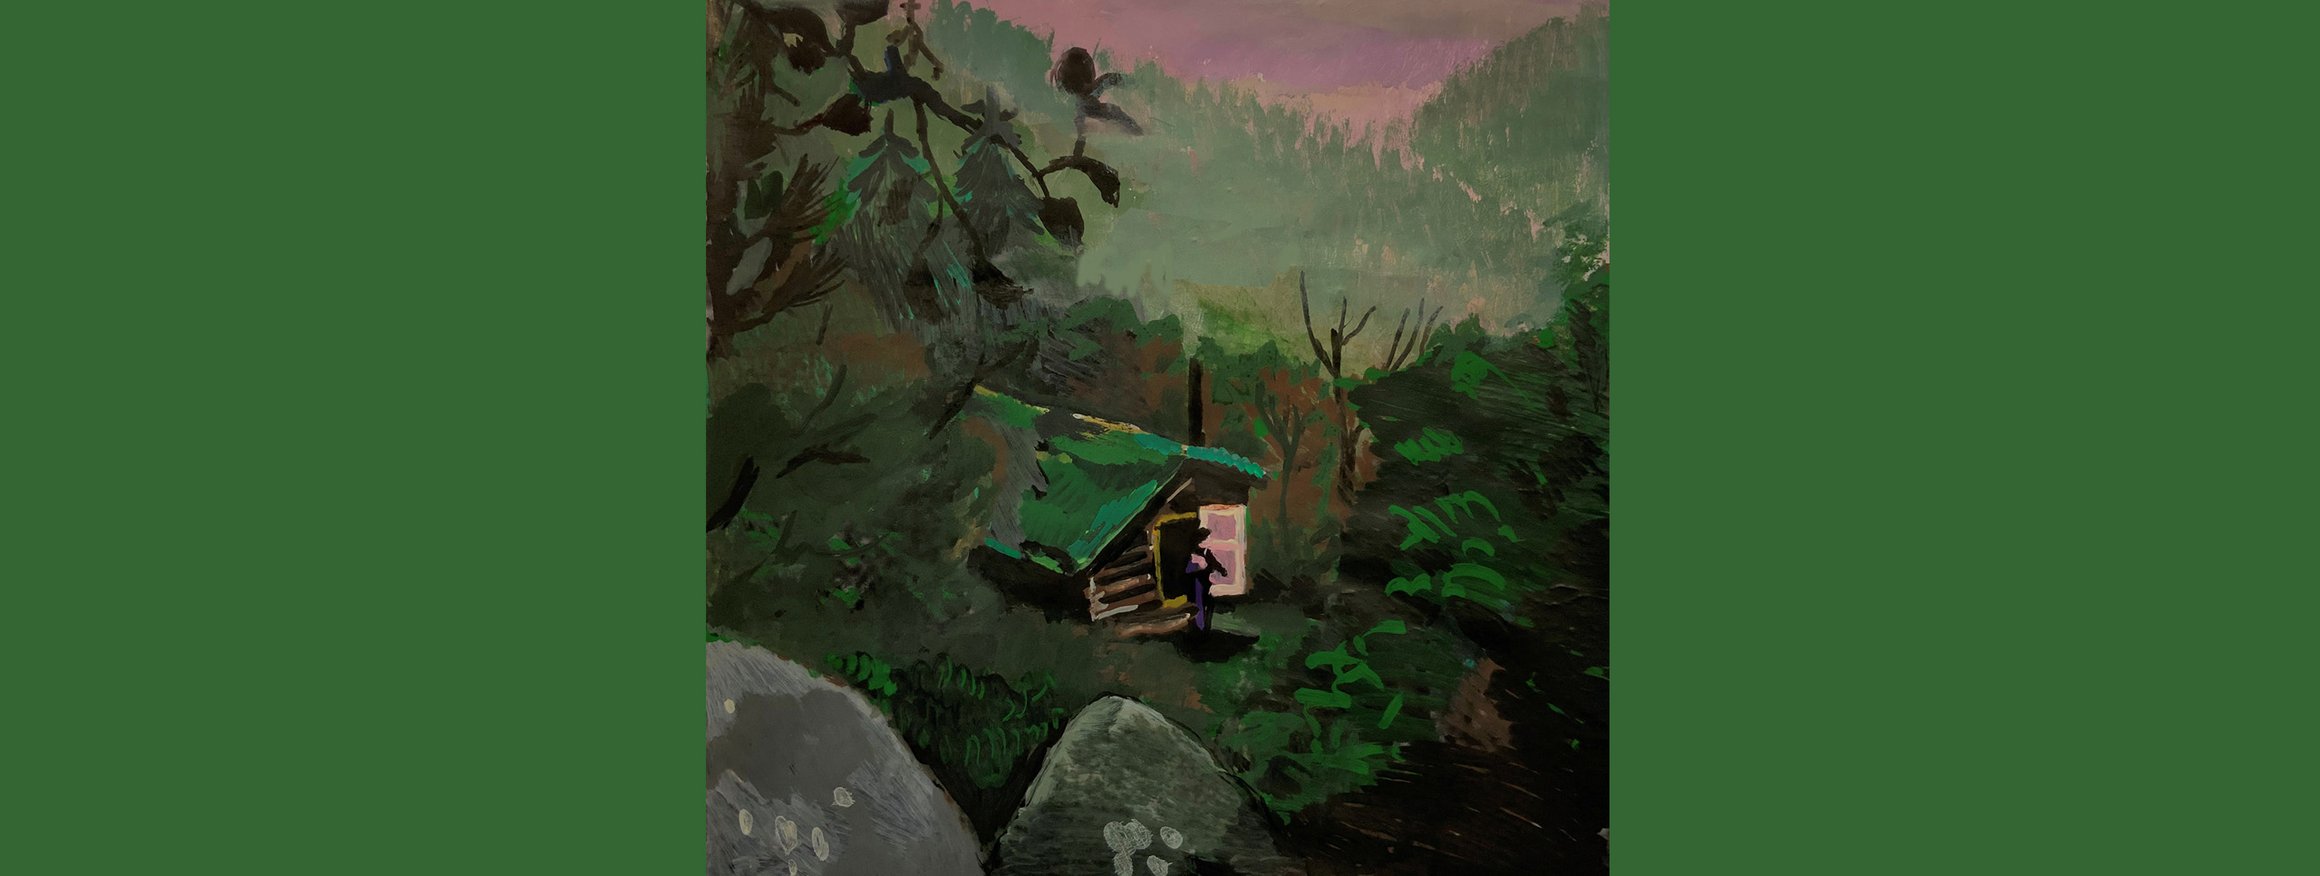 Das Bild zeigt eine Hütte in den Bergen, vor der eine Person steht.